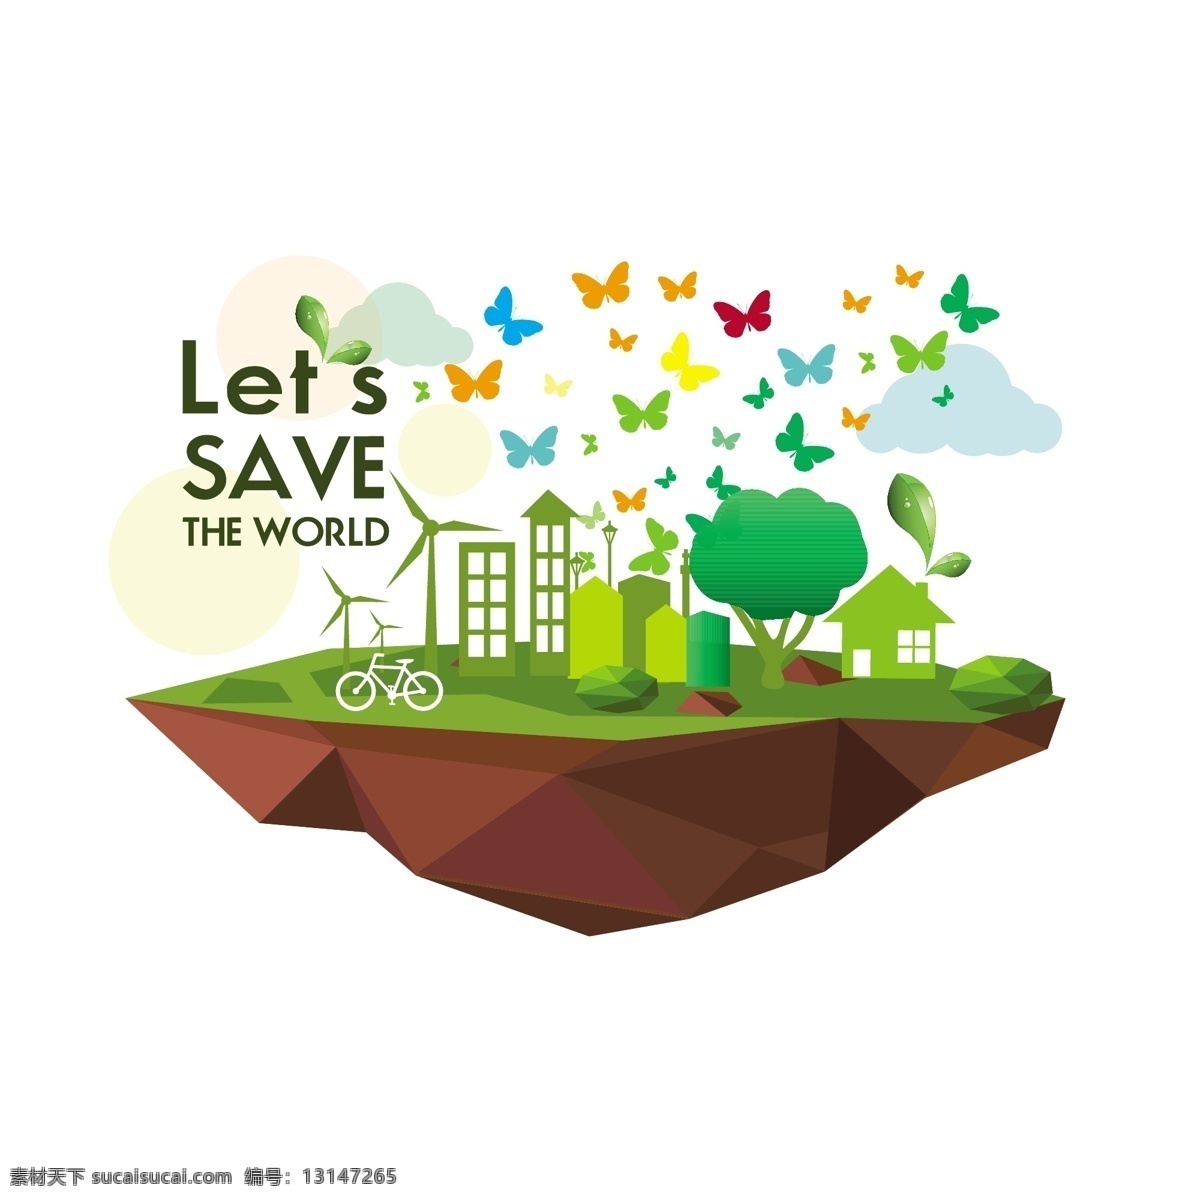 生态信息 环保 创意设计 eco 绿色 蝴蝶图案 循环 能源 节能 低碳 生态 回收 环保标志 ppt素材 底纹背景 商务金融 商业插画 白色